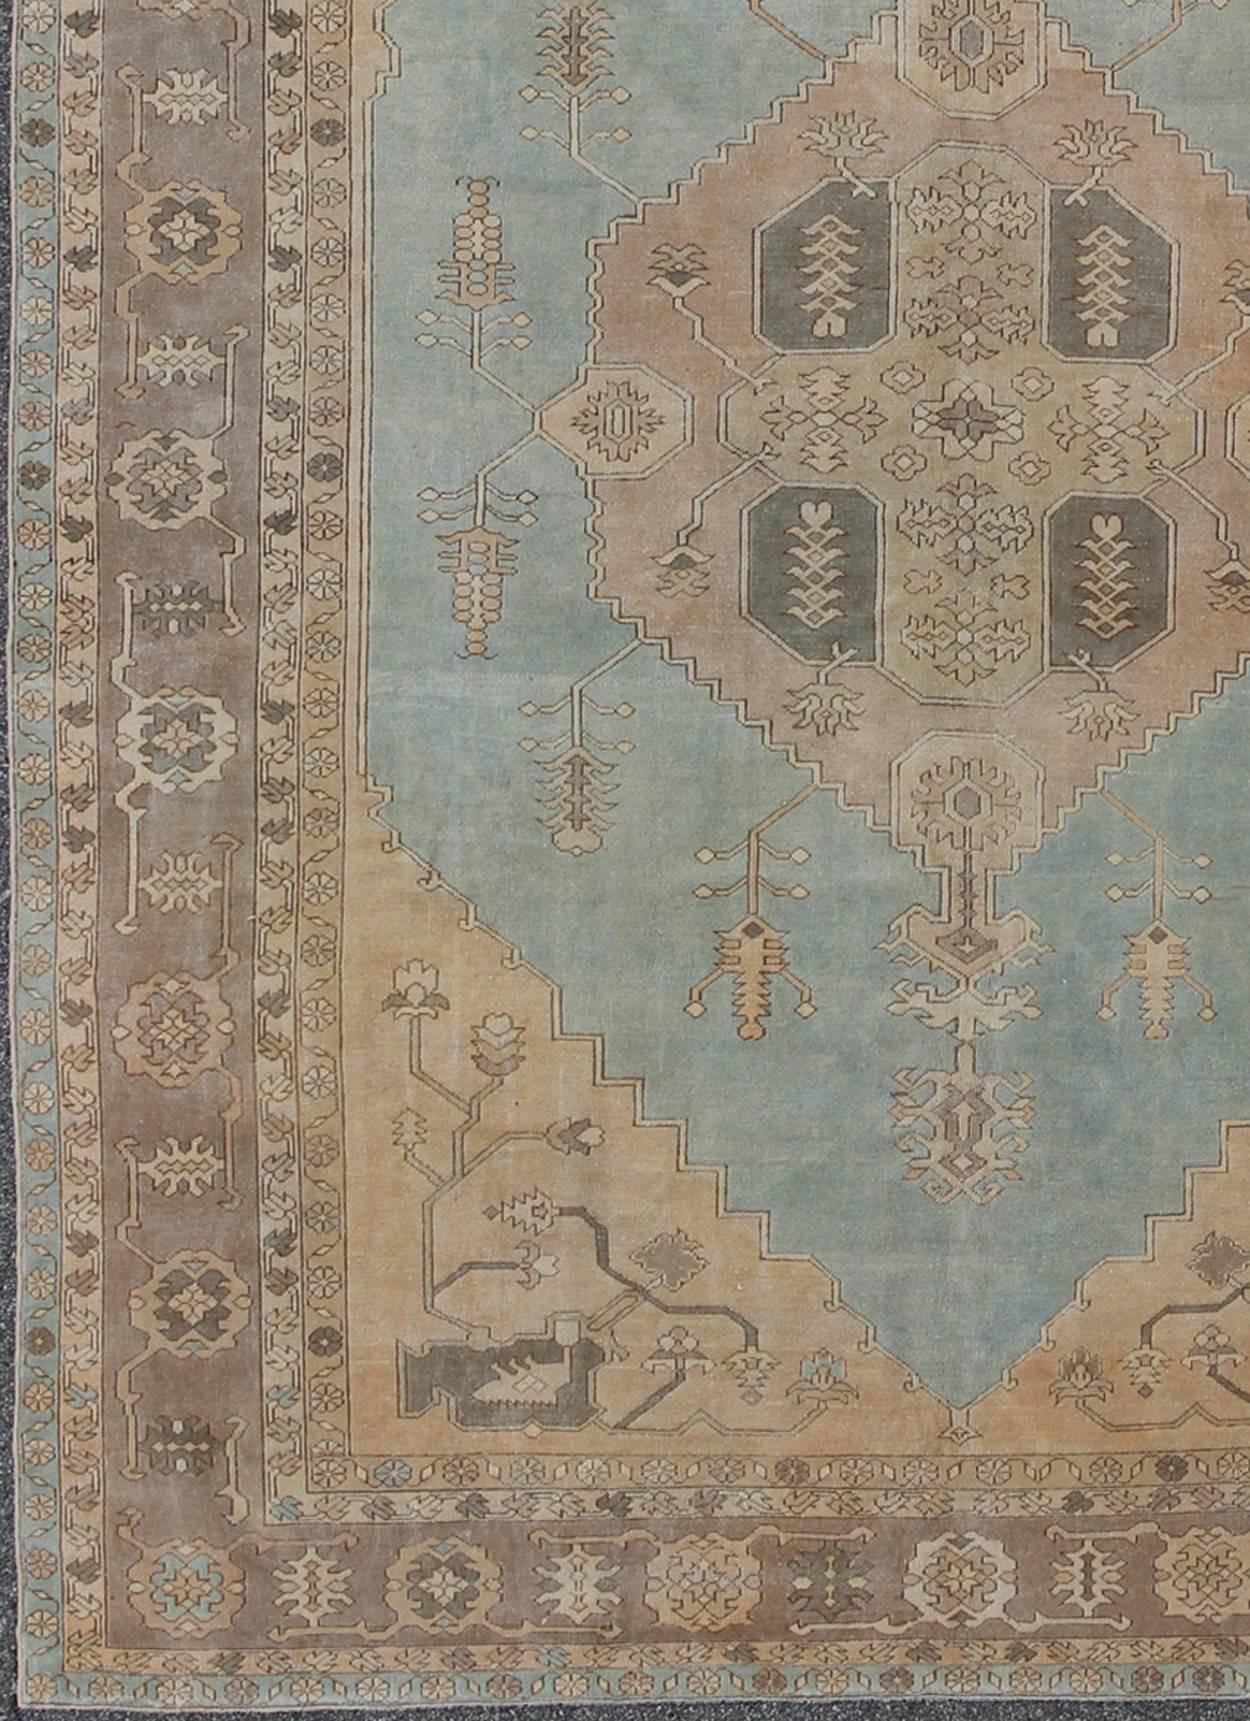 Türkischer Oushak-Teppich mit Blumenranken in Hellblau, Hellbraun und Hellbraun, tu-mtu-3749, Herkunftsland / Art: Türkei / Oushak, um 1940

Dieser wunderschöne Vintage-Teppich aus der Türkei aus der Mitte des 20. Jahrhunderts zeichnet sich durch